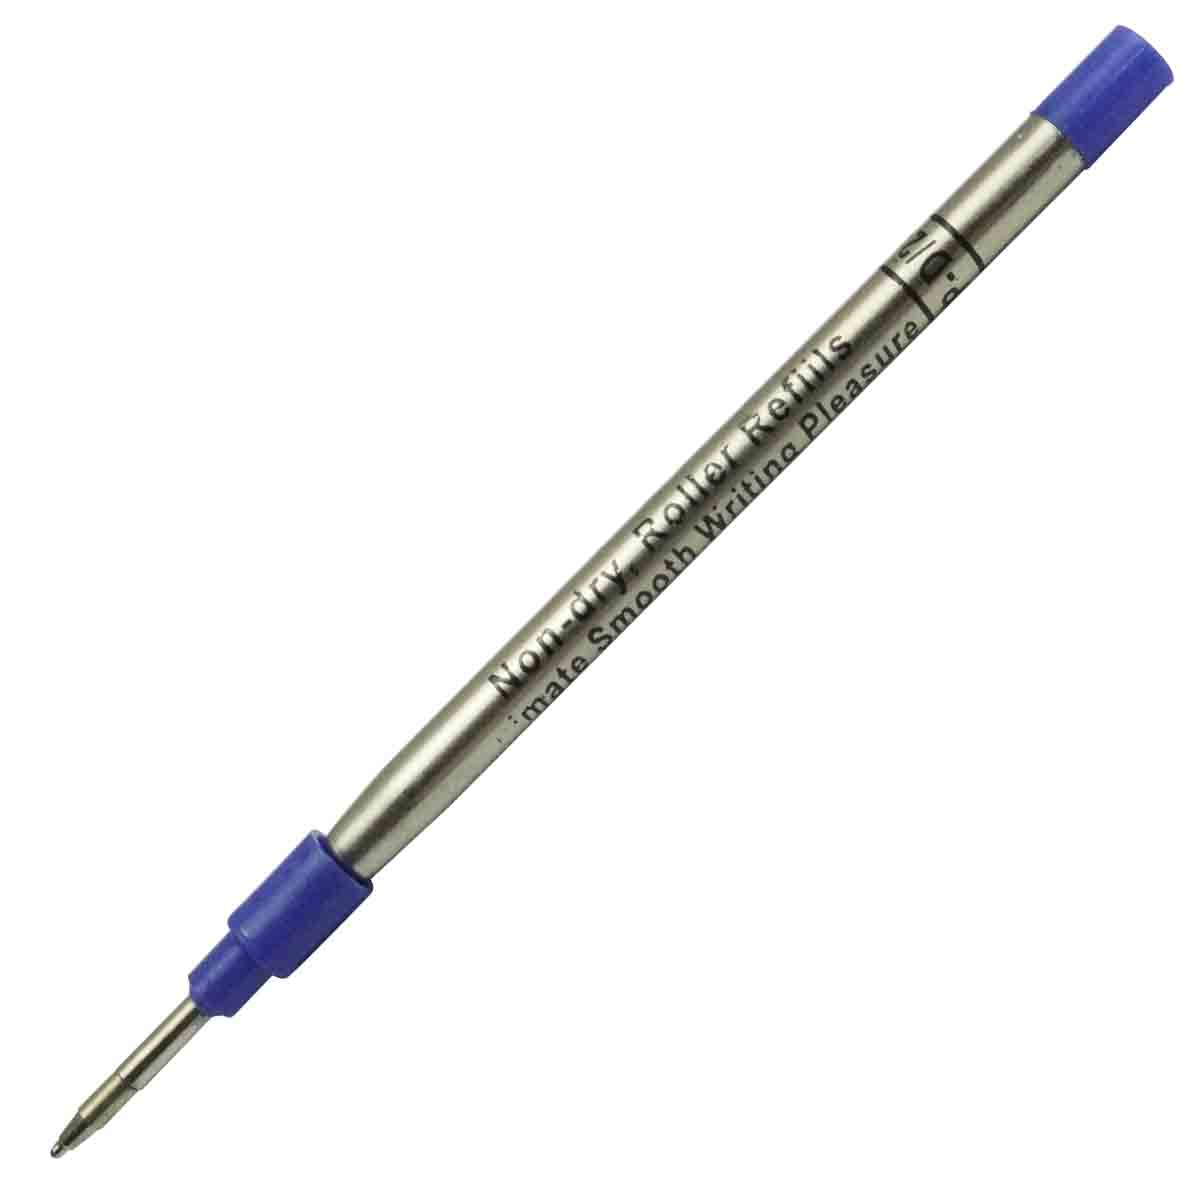 Ukoba 0.7mm Black  Ball Pen Refill for Roller Ball Pens Model 71052